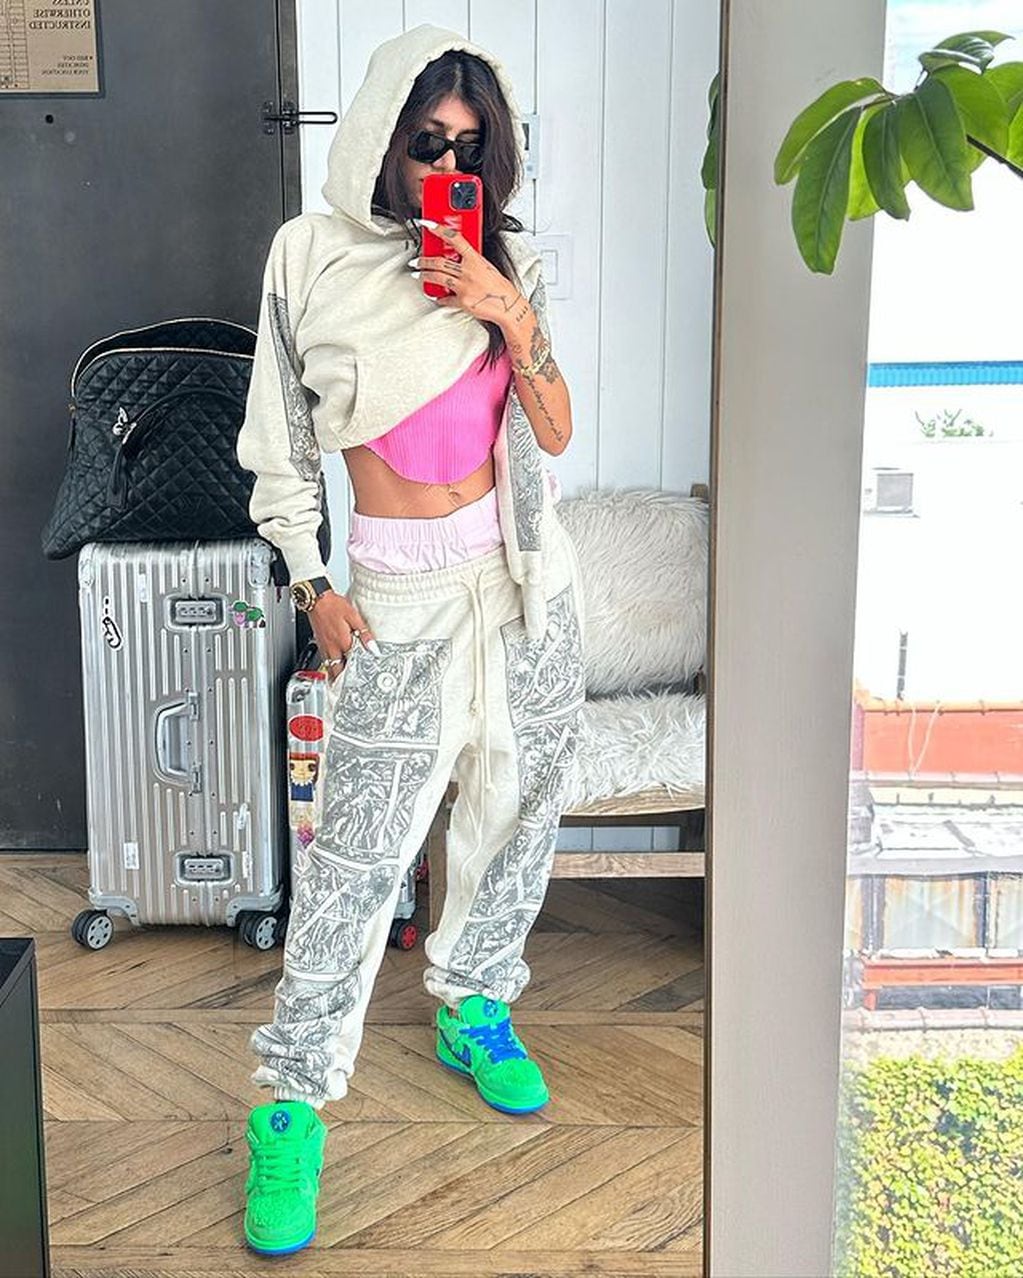 La ex actriz de contenido para adulto deslumbró al demostrar su buen gusto para los outfits street style / Foto: Instagram